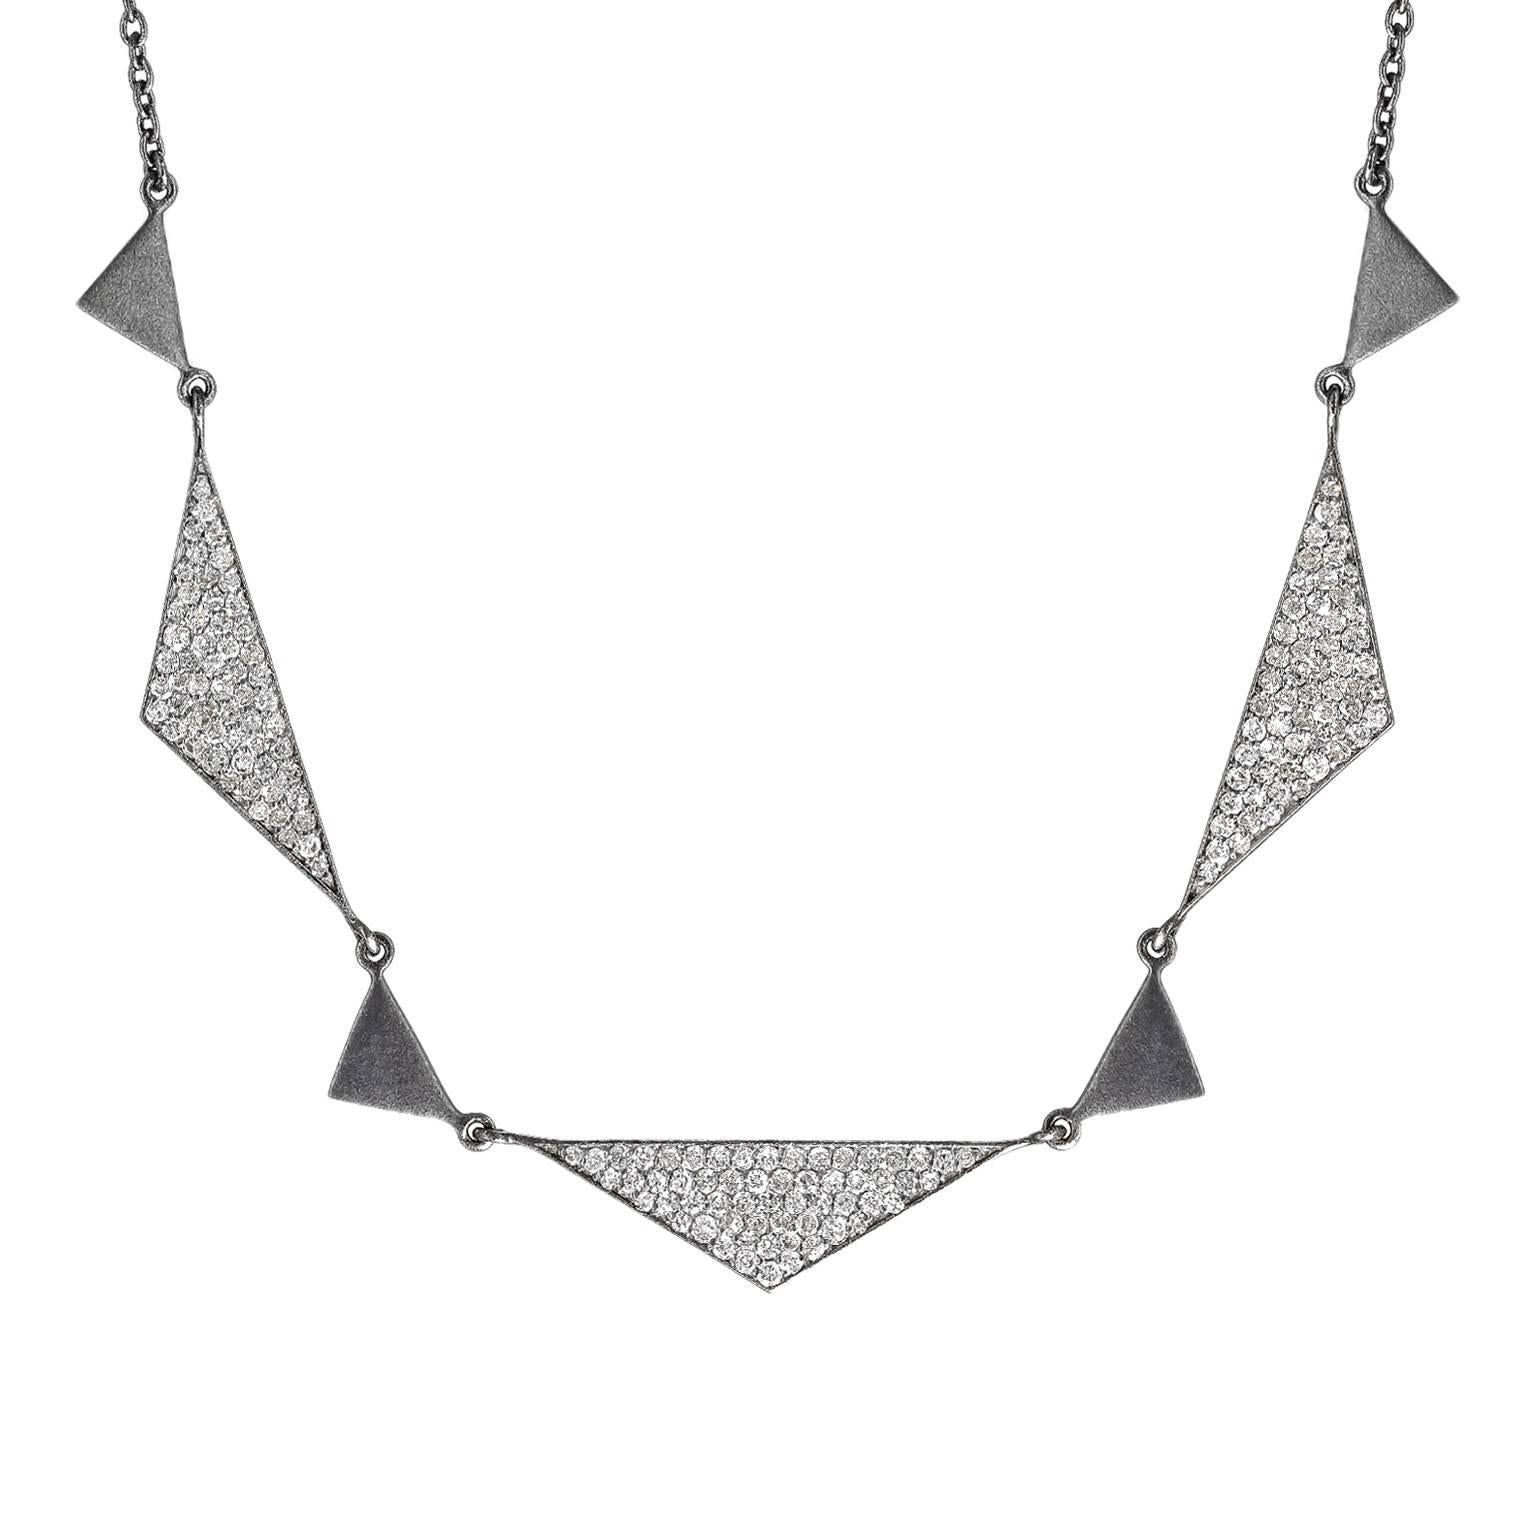 Lauren Harper, collier Trinity en argent oxydé mat avec diamants blancs de 1,92 carat